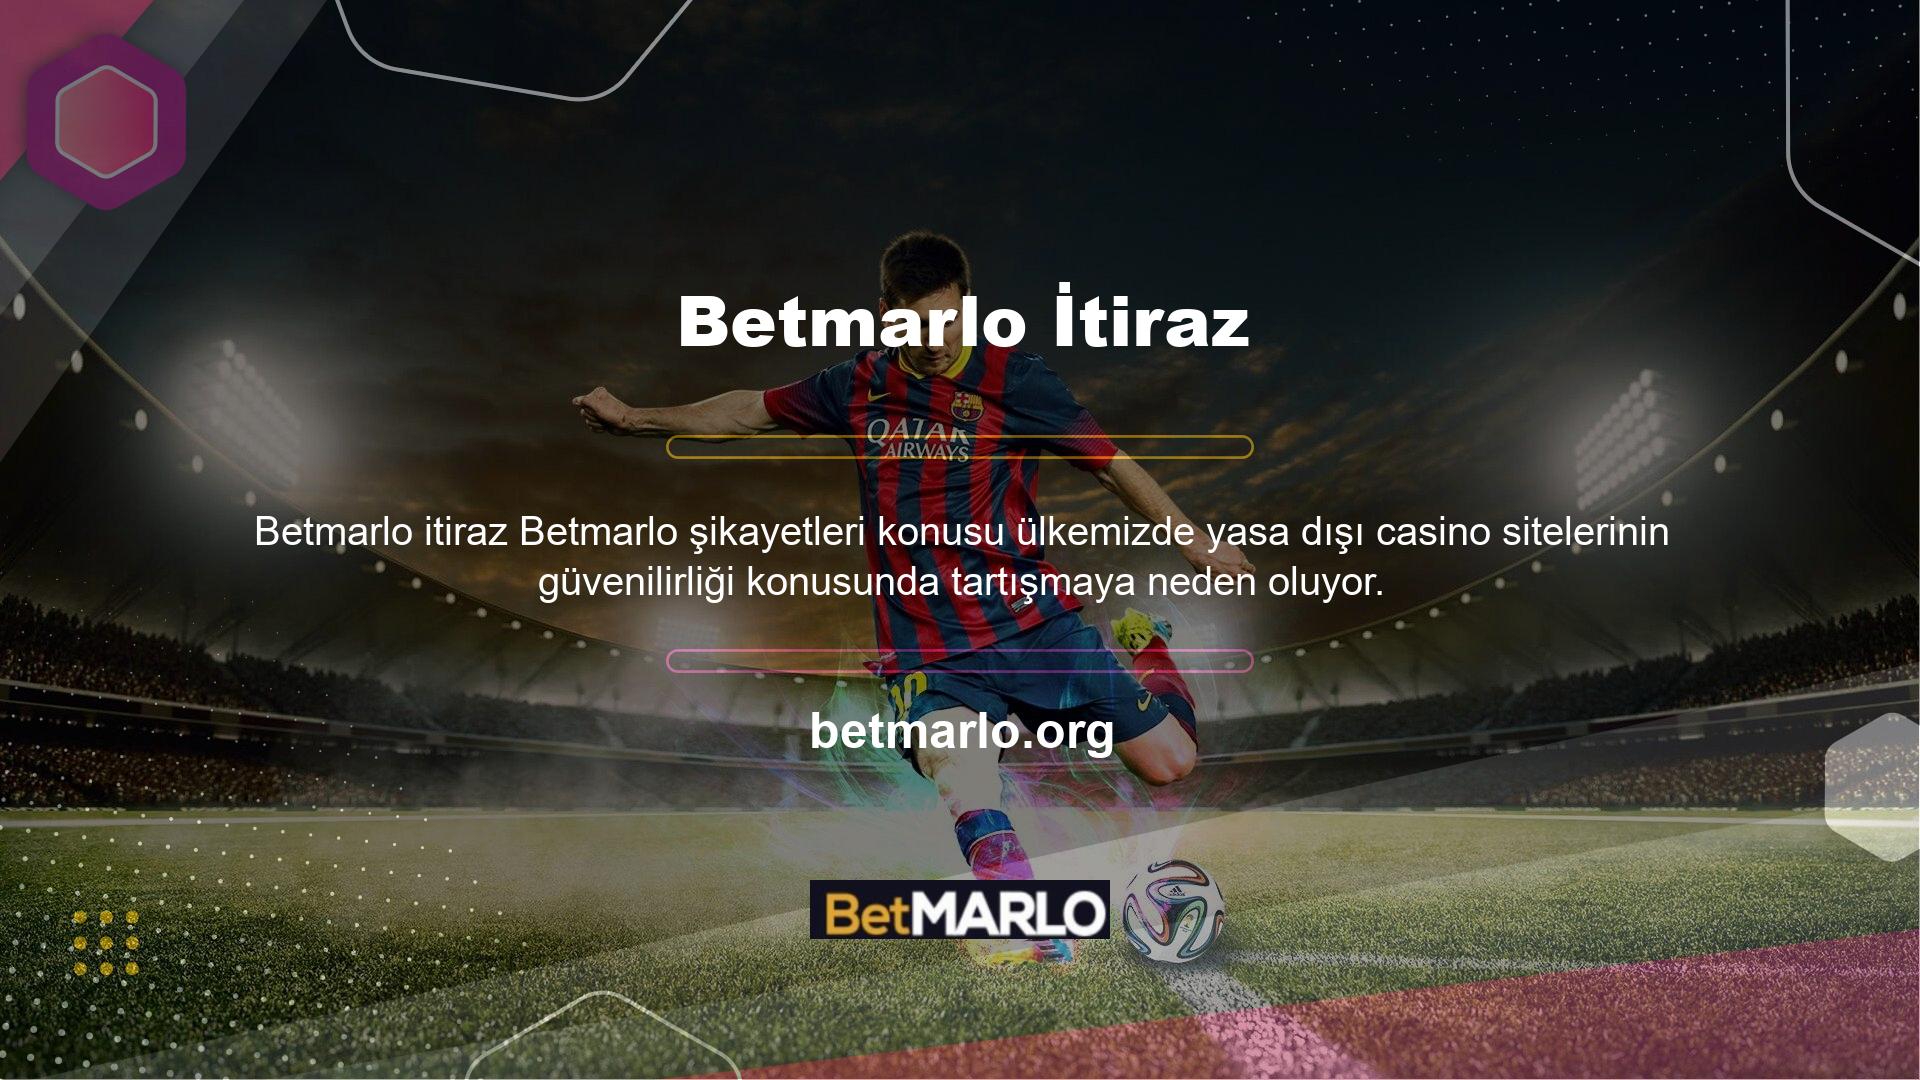 Betmarlo Gaming küçük bir bahis şirketi olsa da, hızlı bir şekilde kurulmuş ve bahisçiler tarafından güvenilmiştir